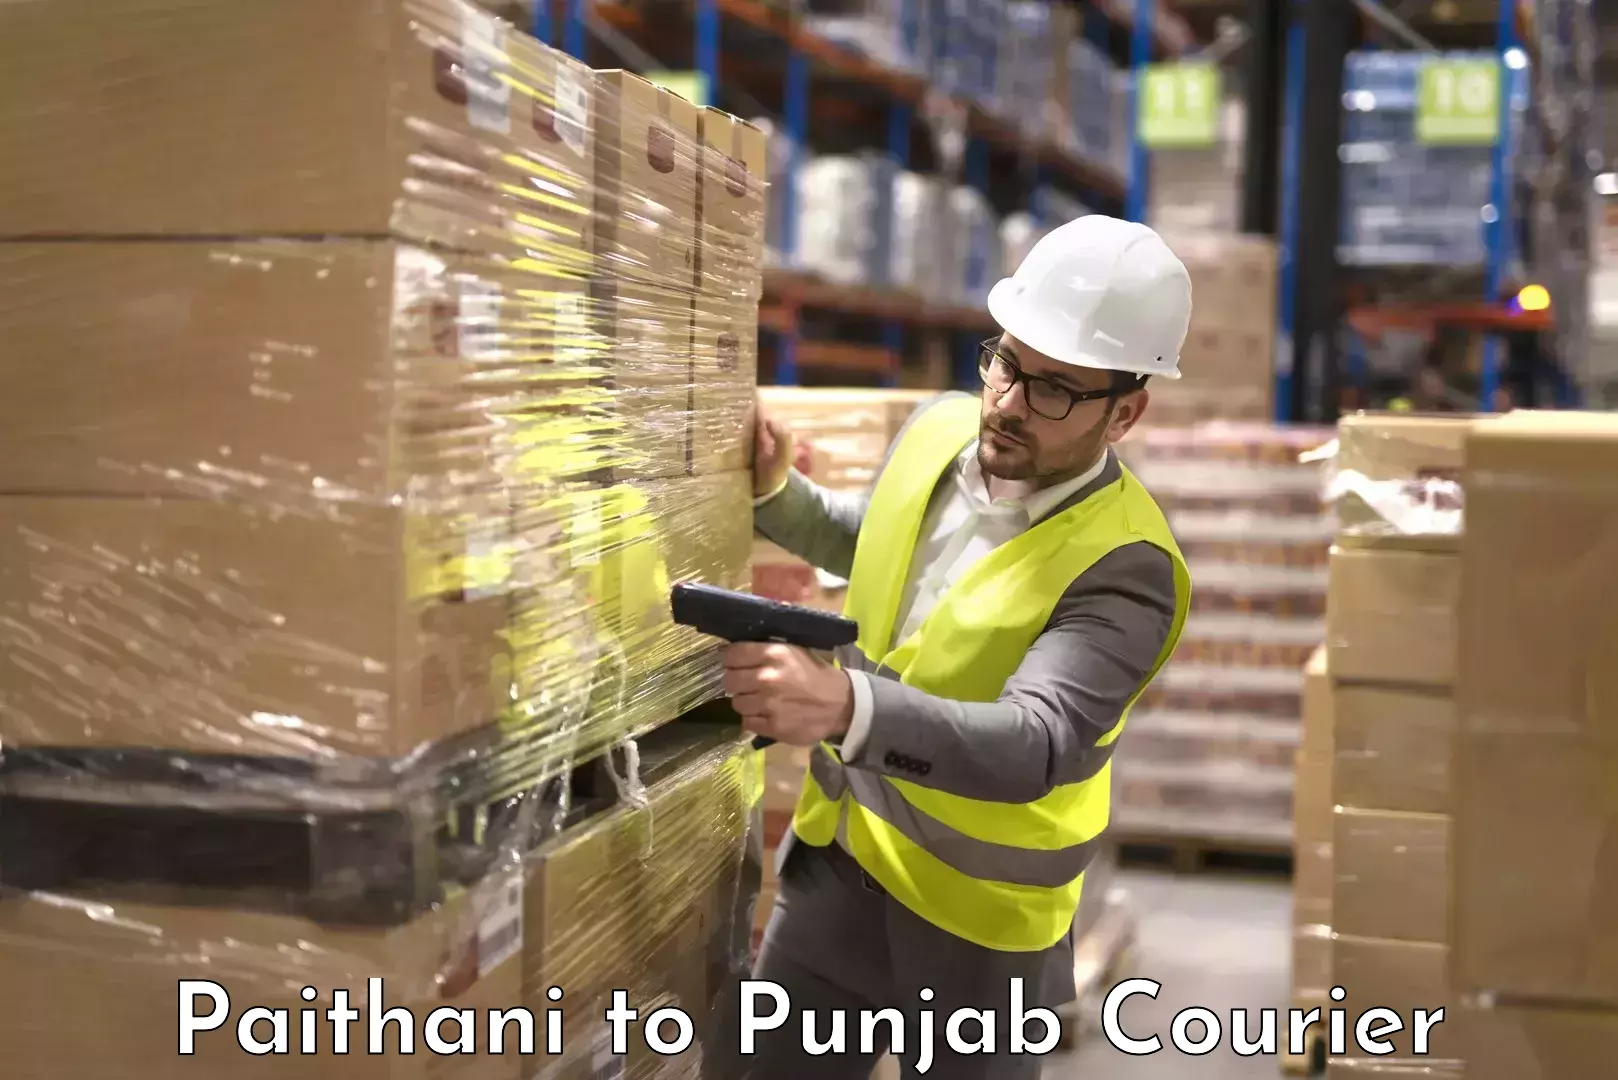 Luggage transport consultancy Paithani to Punjab